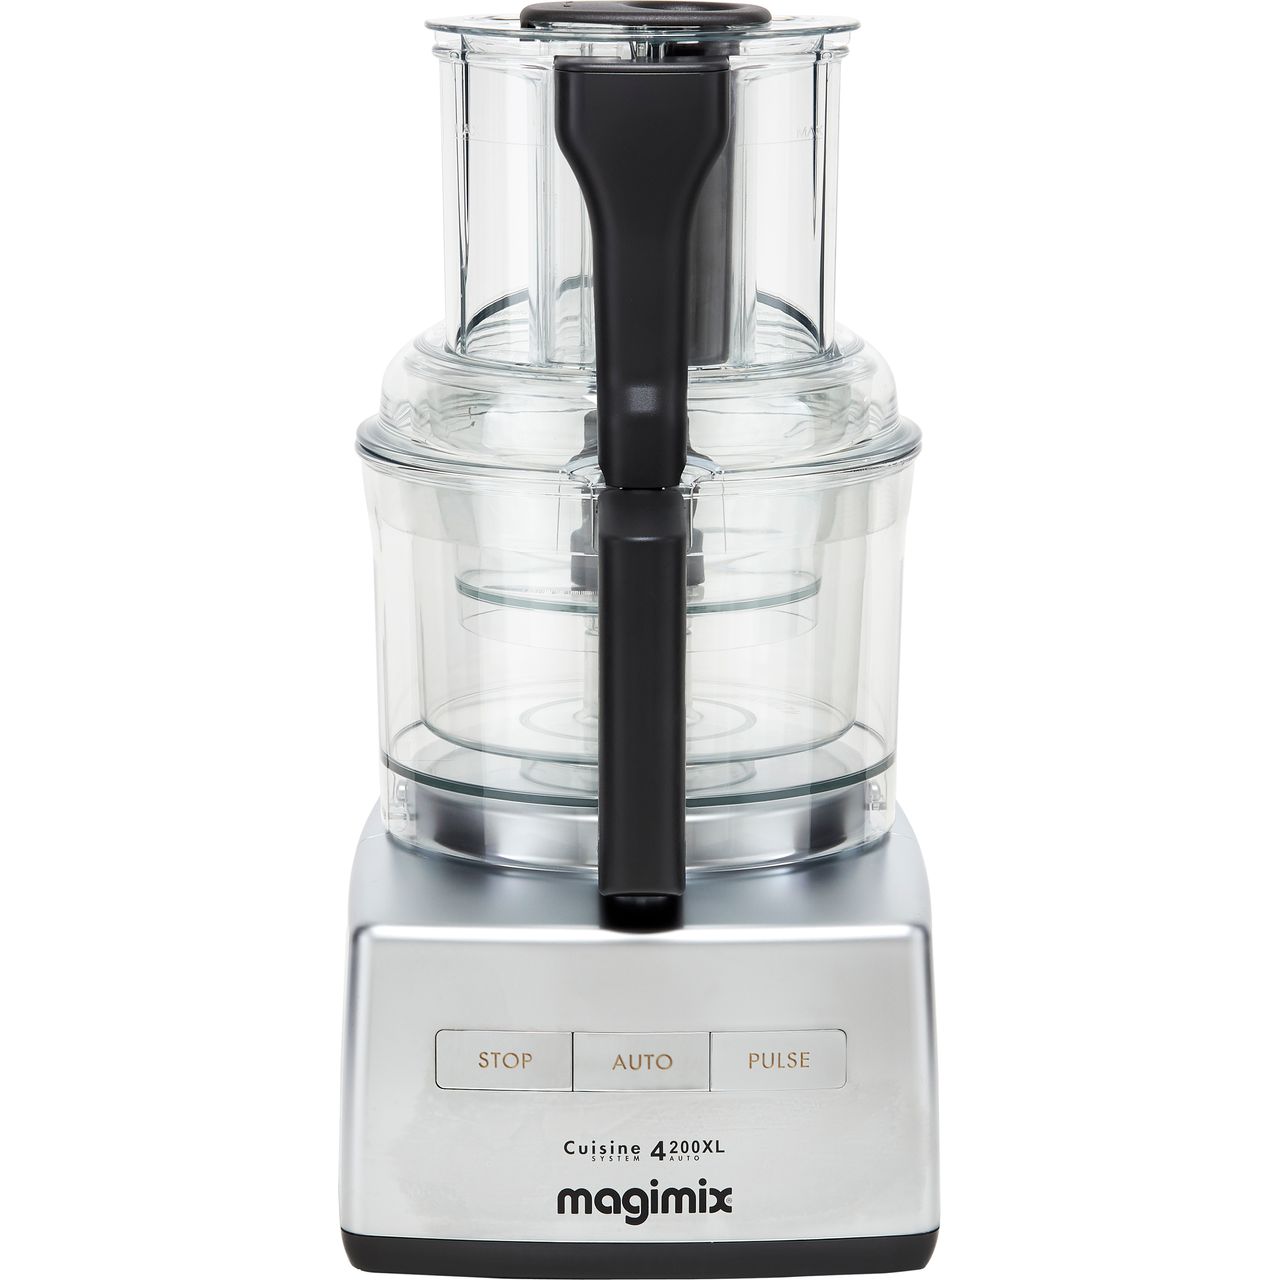 Magimix 4200XL, 14-Cup Food Processor - Artichoke OTR